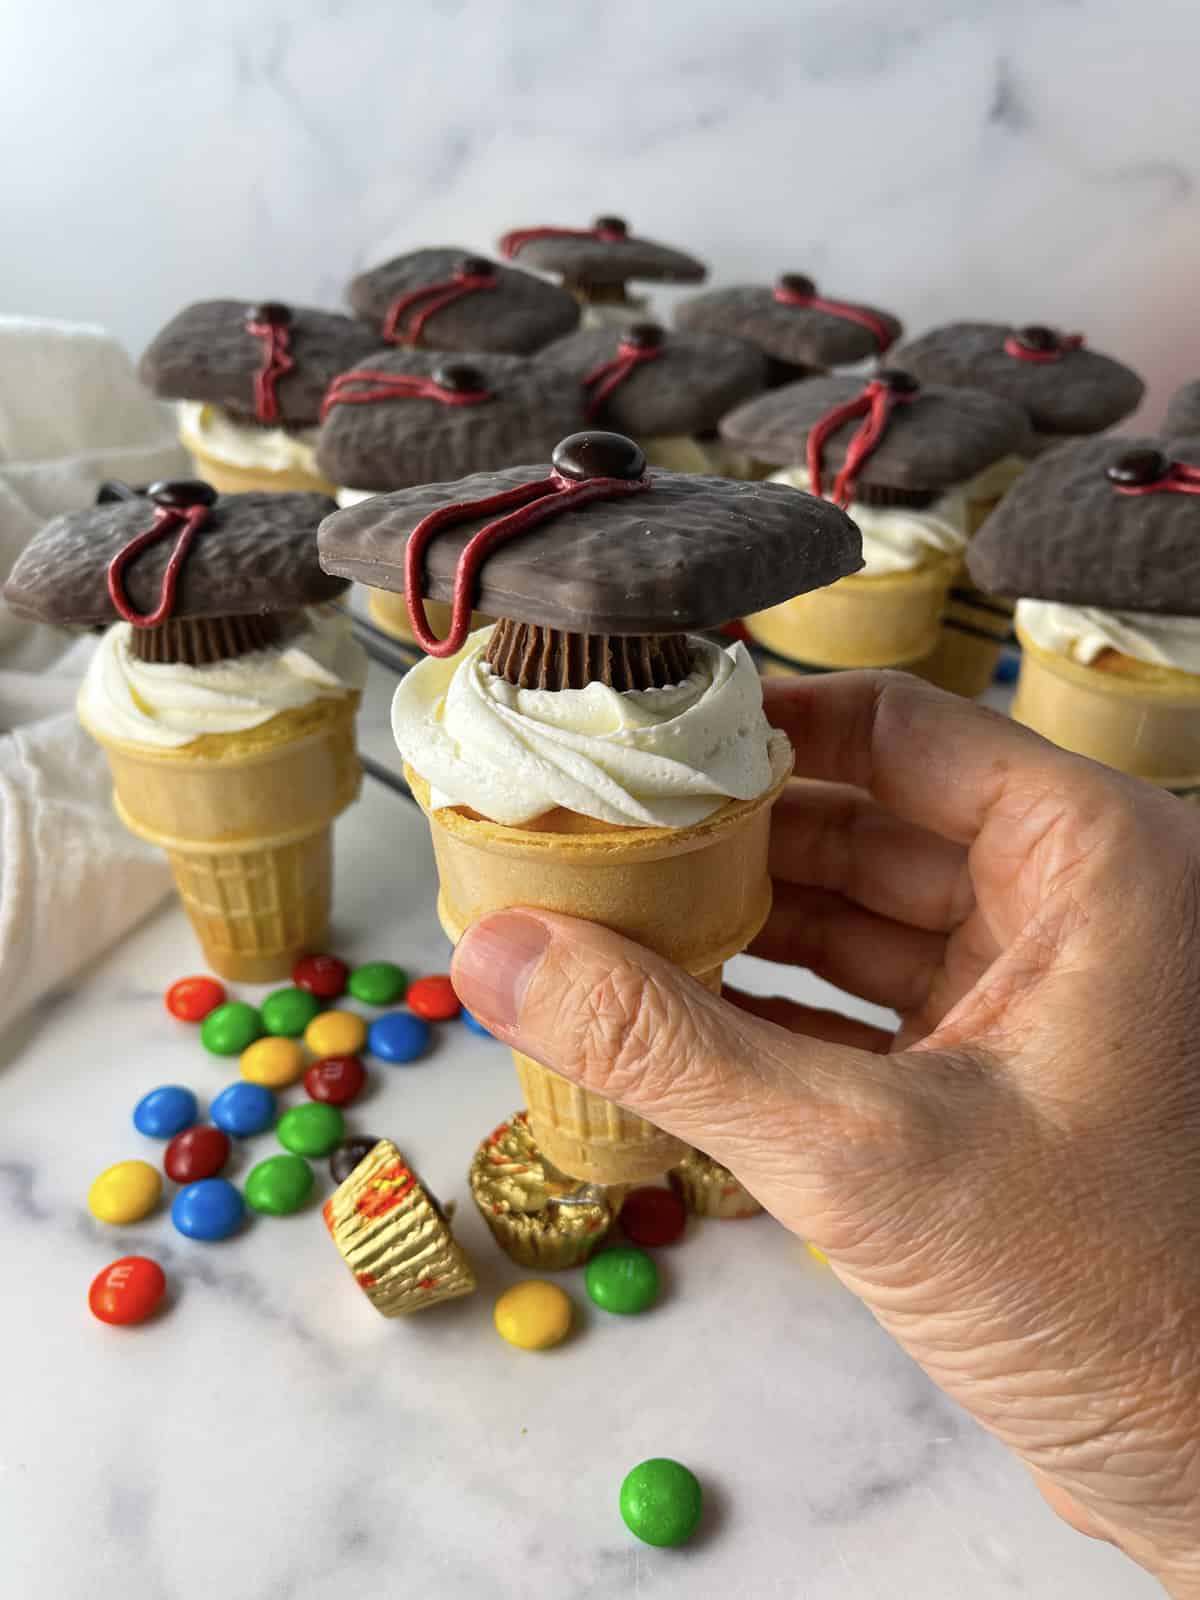 Grad cap cupcakes baked in ice cream cones.